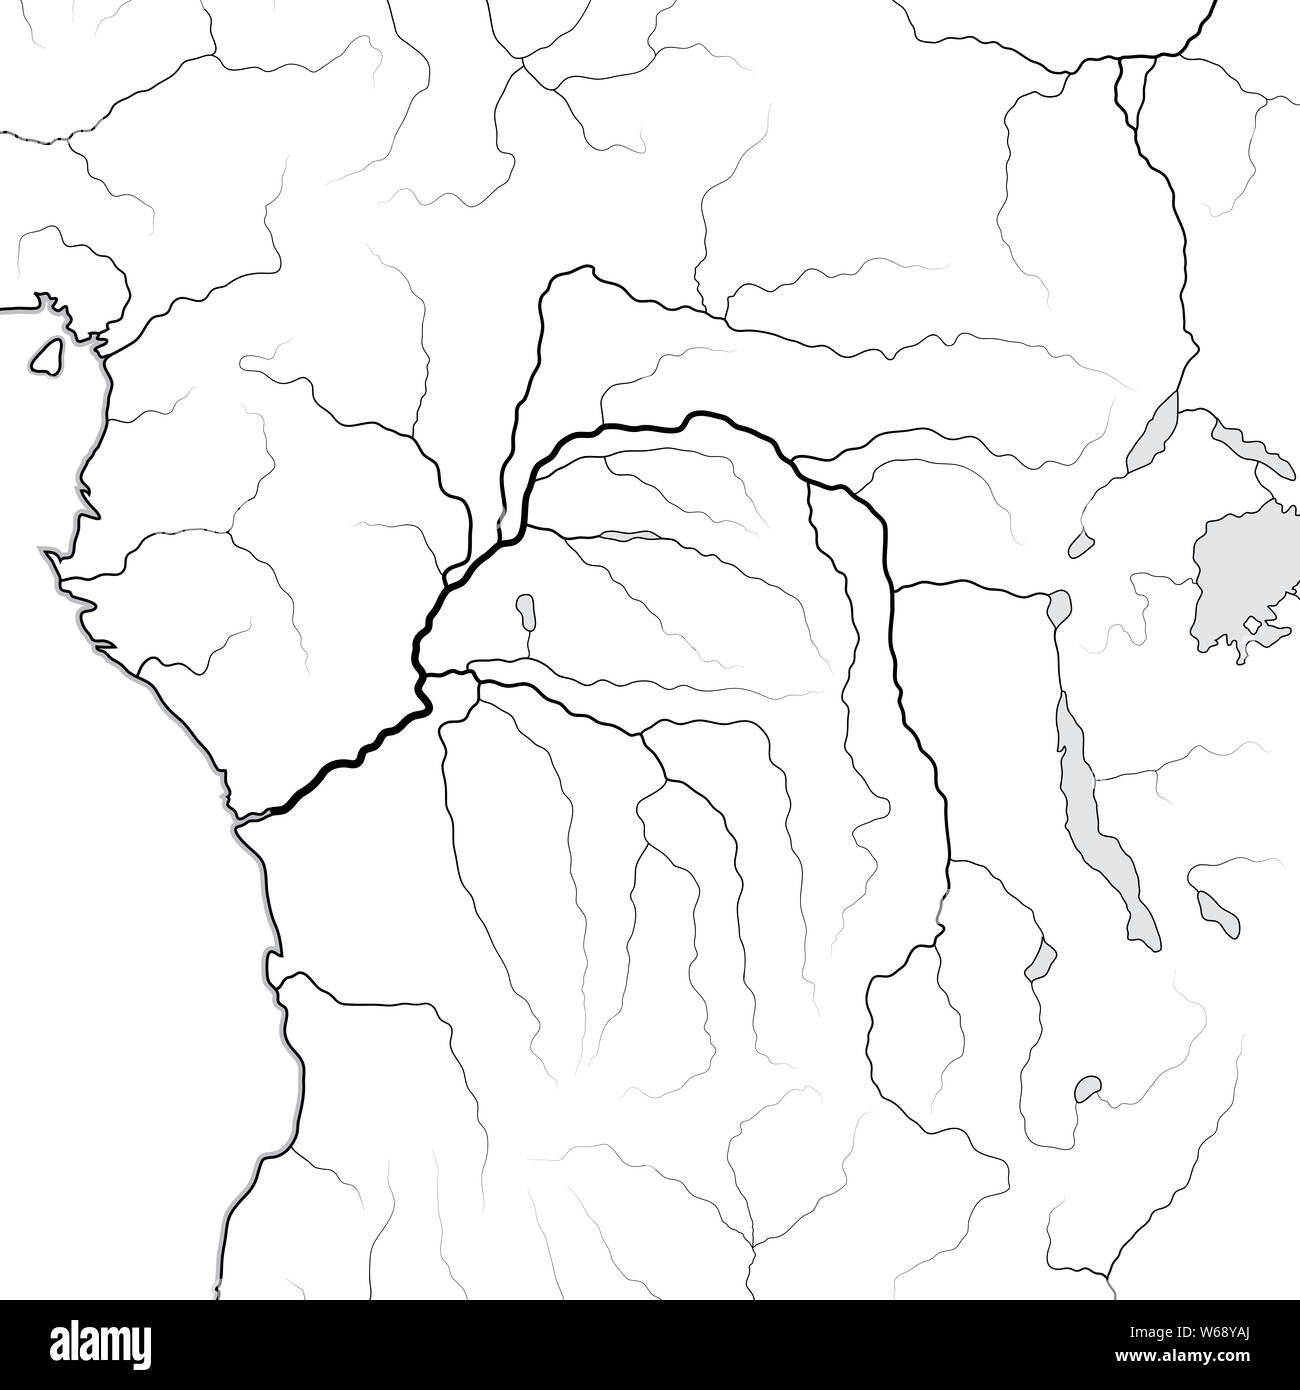 Weltkarte Der KONGOBECKEN: Äquatorial Afrika, Zentralafrika, Kongo, Kongo, Zaire. Geographische Chart mit Küste & Main Nebenflüssen. Stockfoto